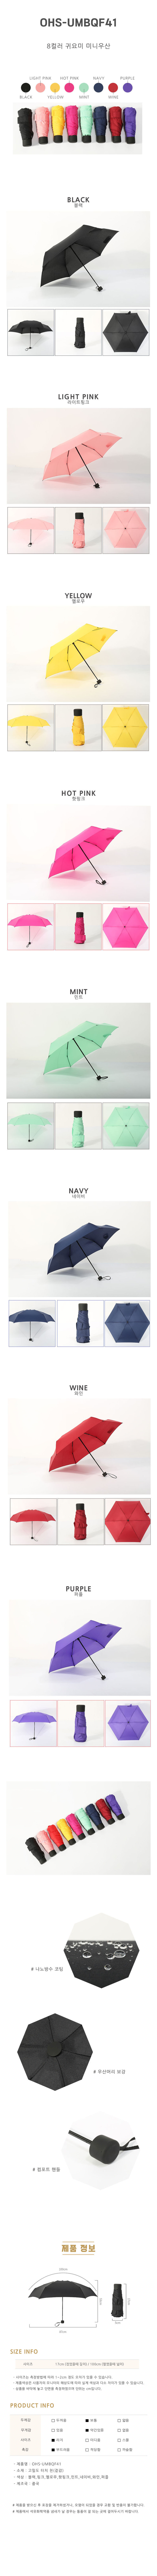 우산,3단우산,미니우산,양산,보조우산